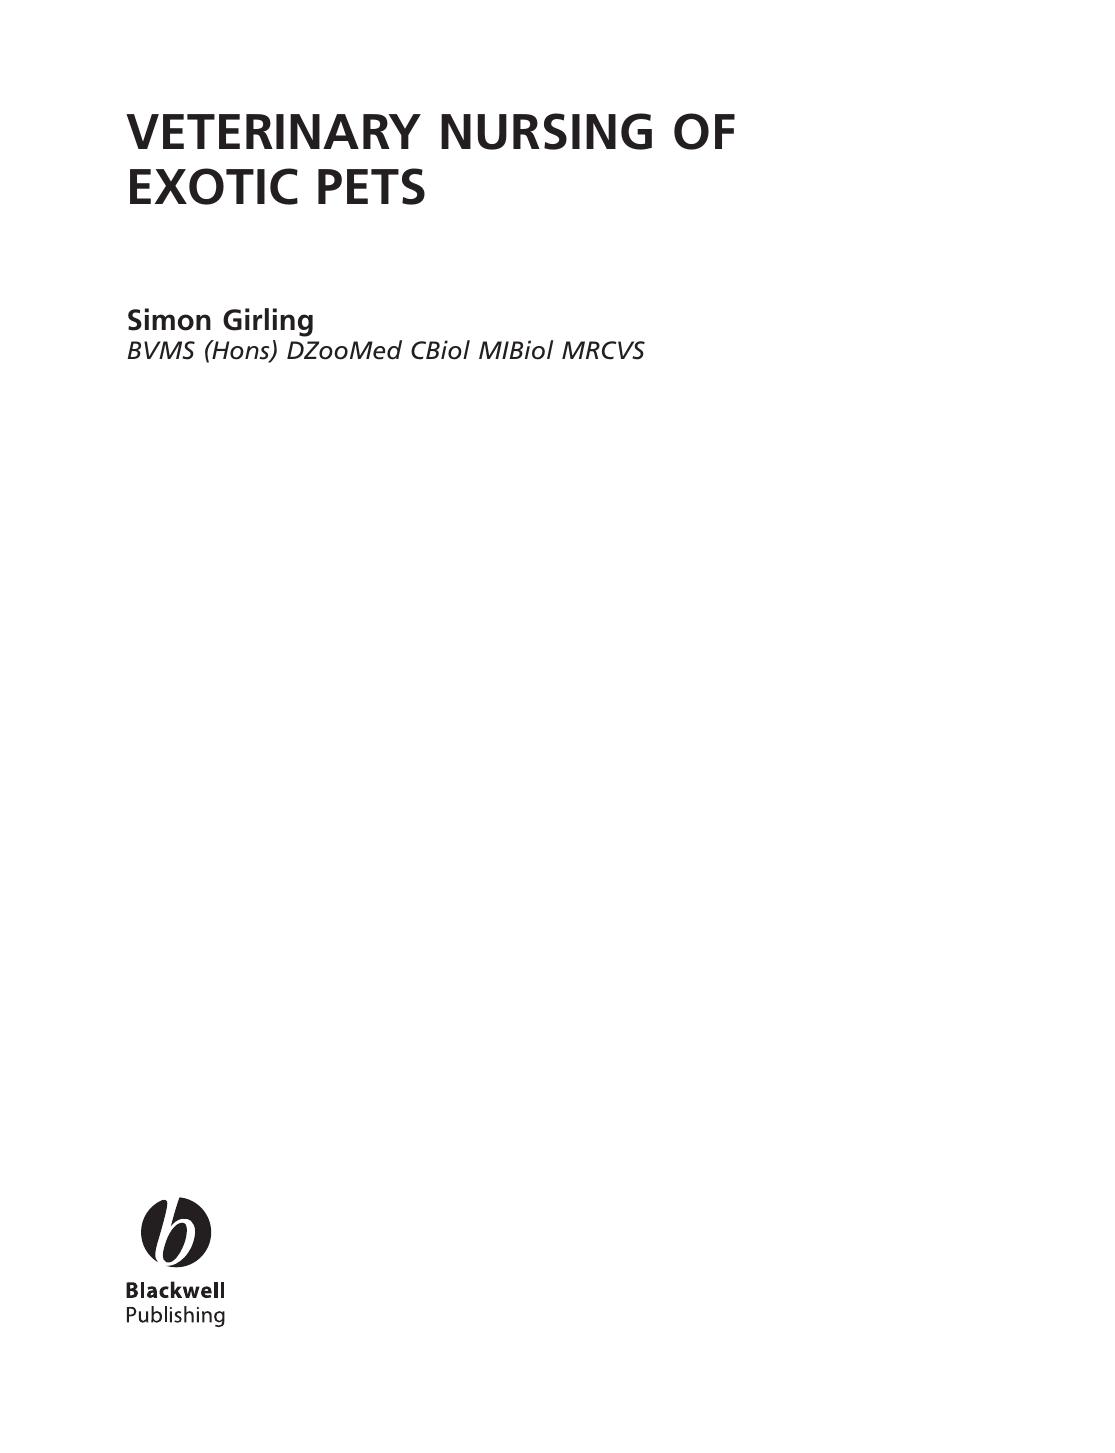 Veterinary Nursing of Exotic pets                                                                                                                                         2003